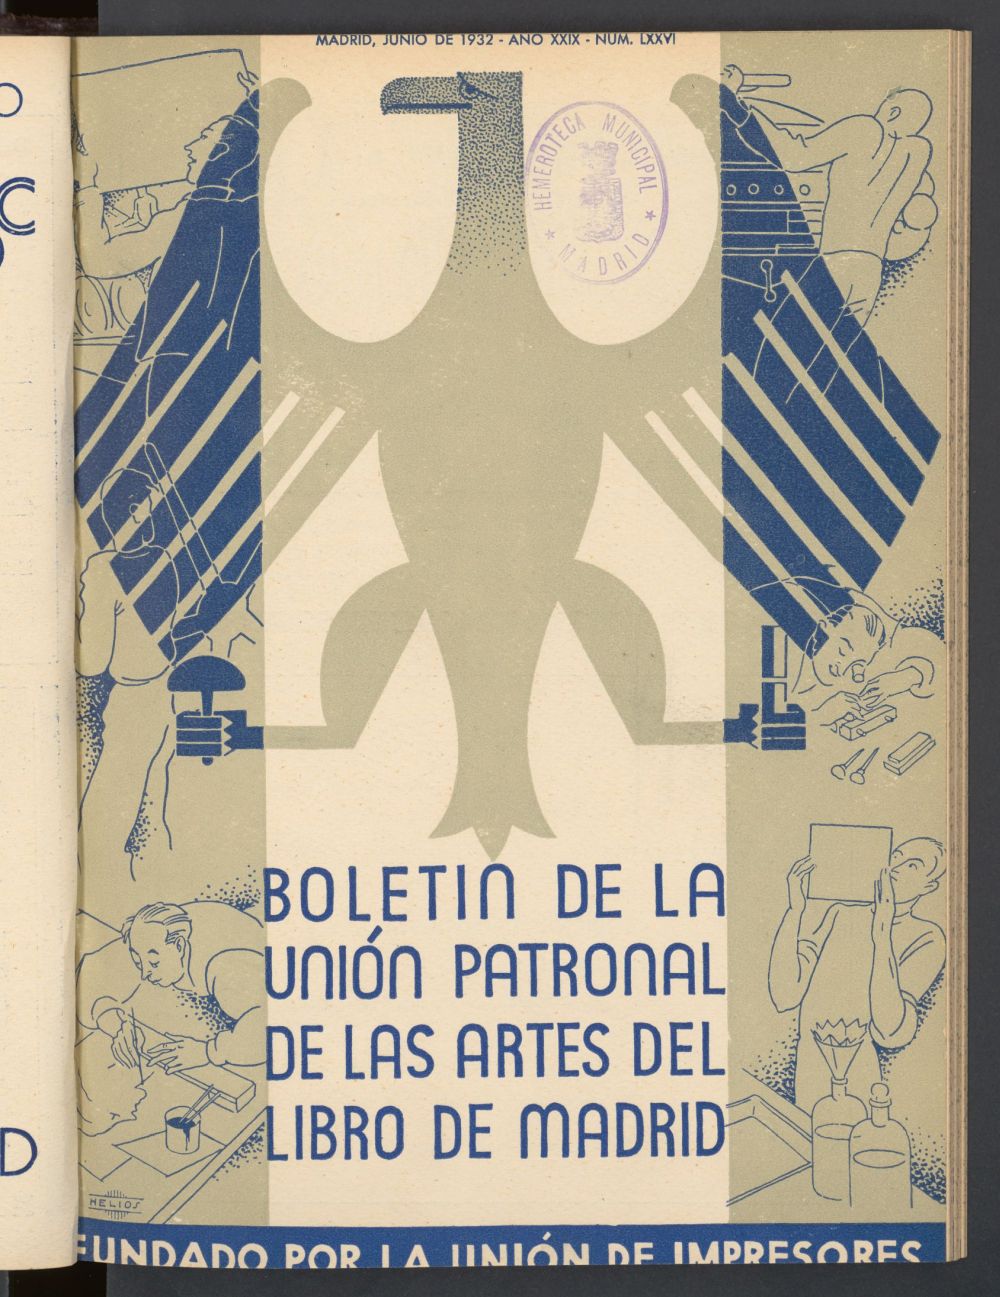 Boletn de la unin de impresores : rgano de la unin patronal de las artes del libro de junio de 1932